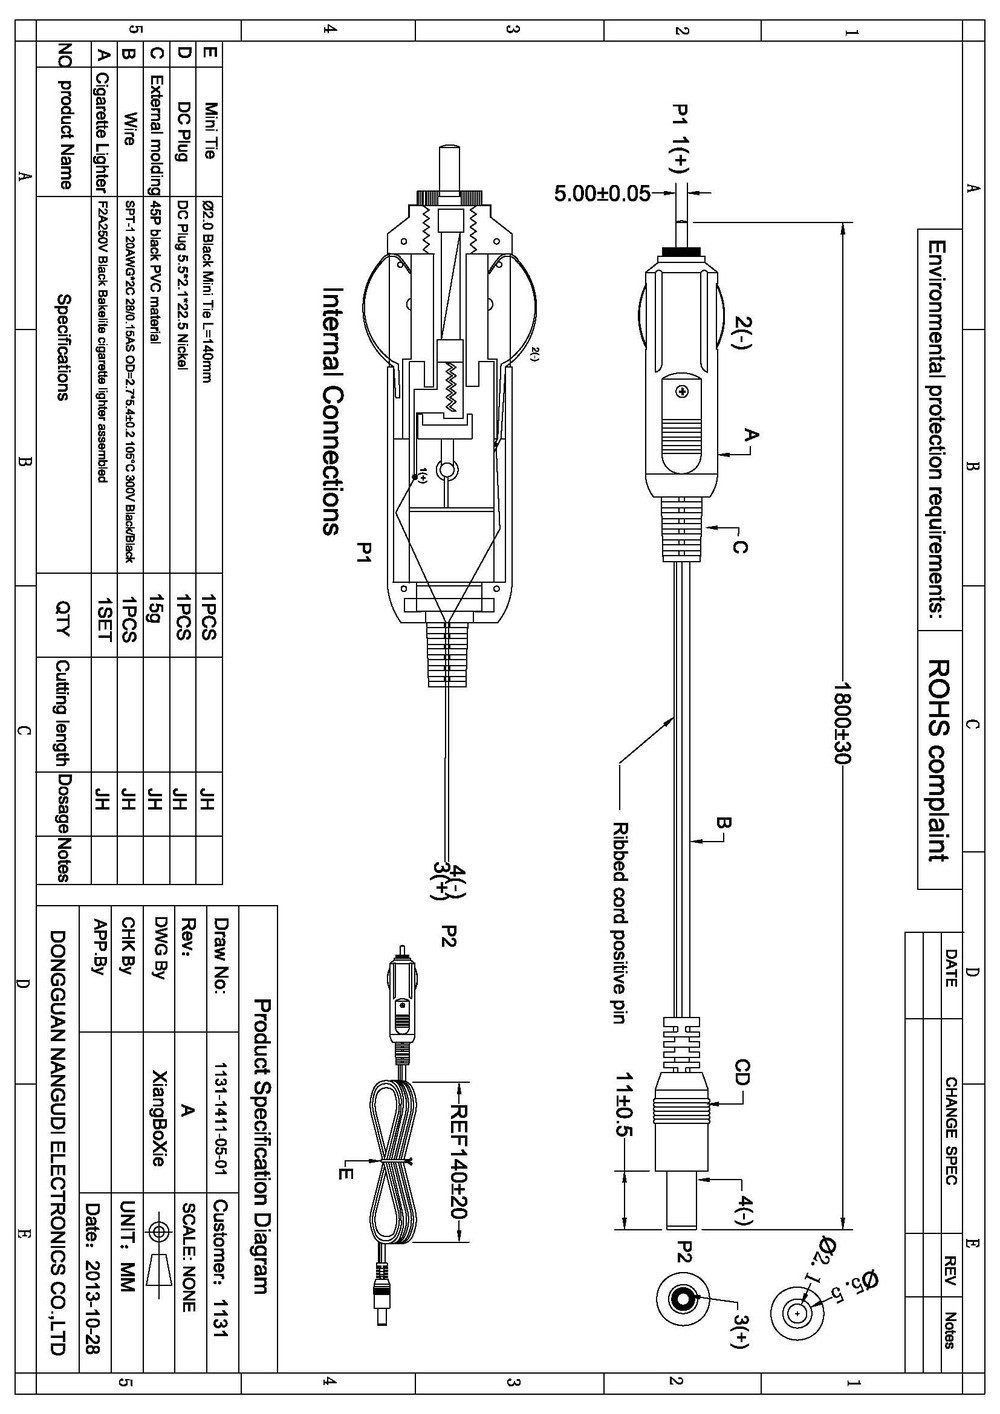 Cigarette Lighter Plug Wiring Diagram Webtor Me And